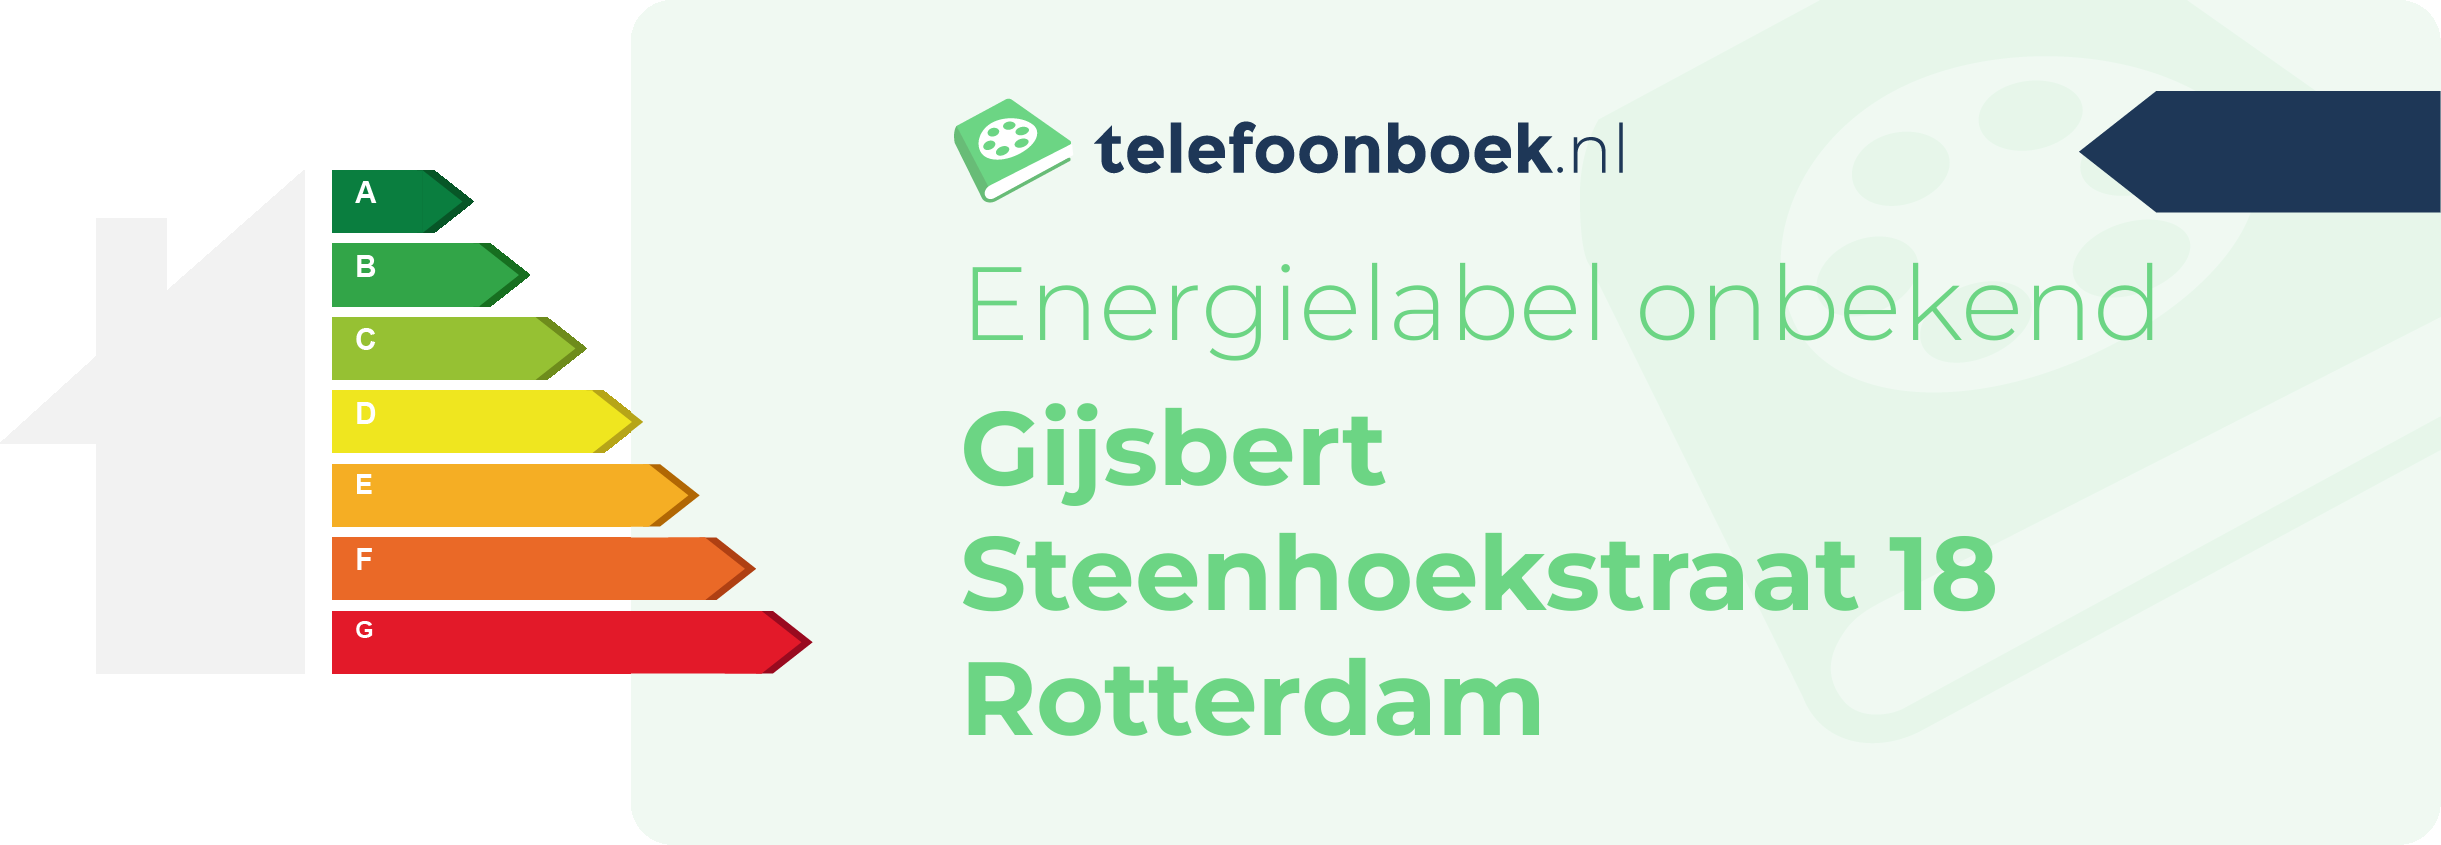 Energielabel Gijsbert Steenhoekstraat 18 Rotterdam